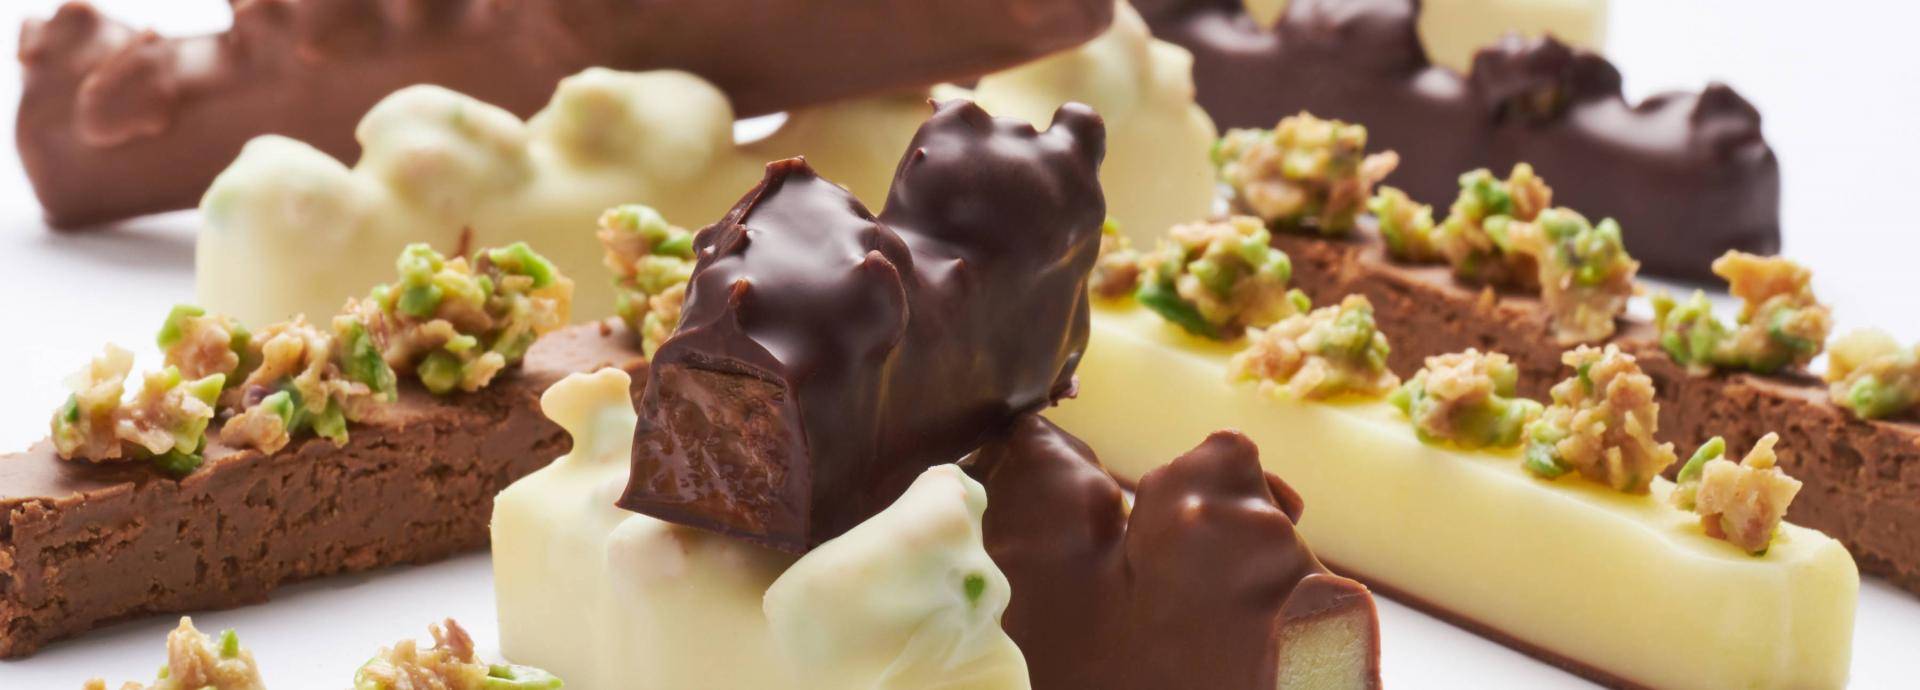 Chocolate Academy İstanbul şeflerinden Şeker Bayramına özel çikolata tarifleri